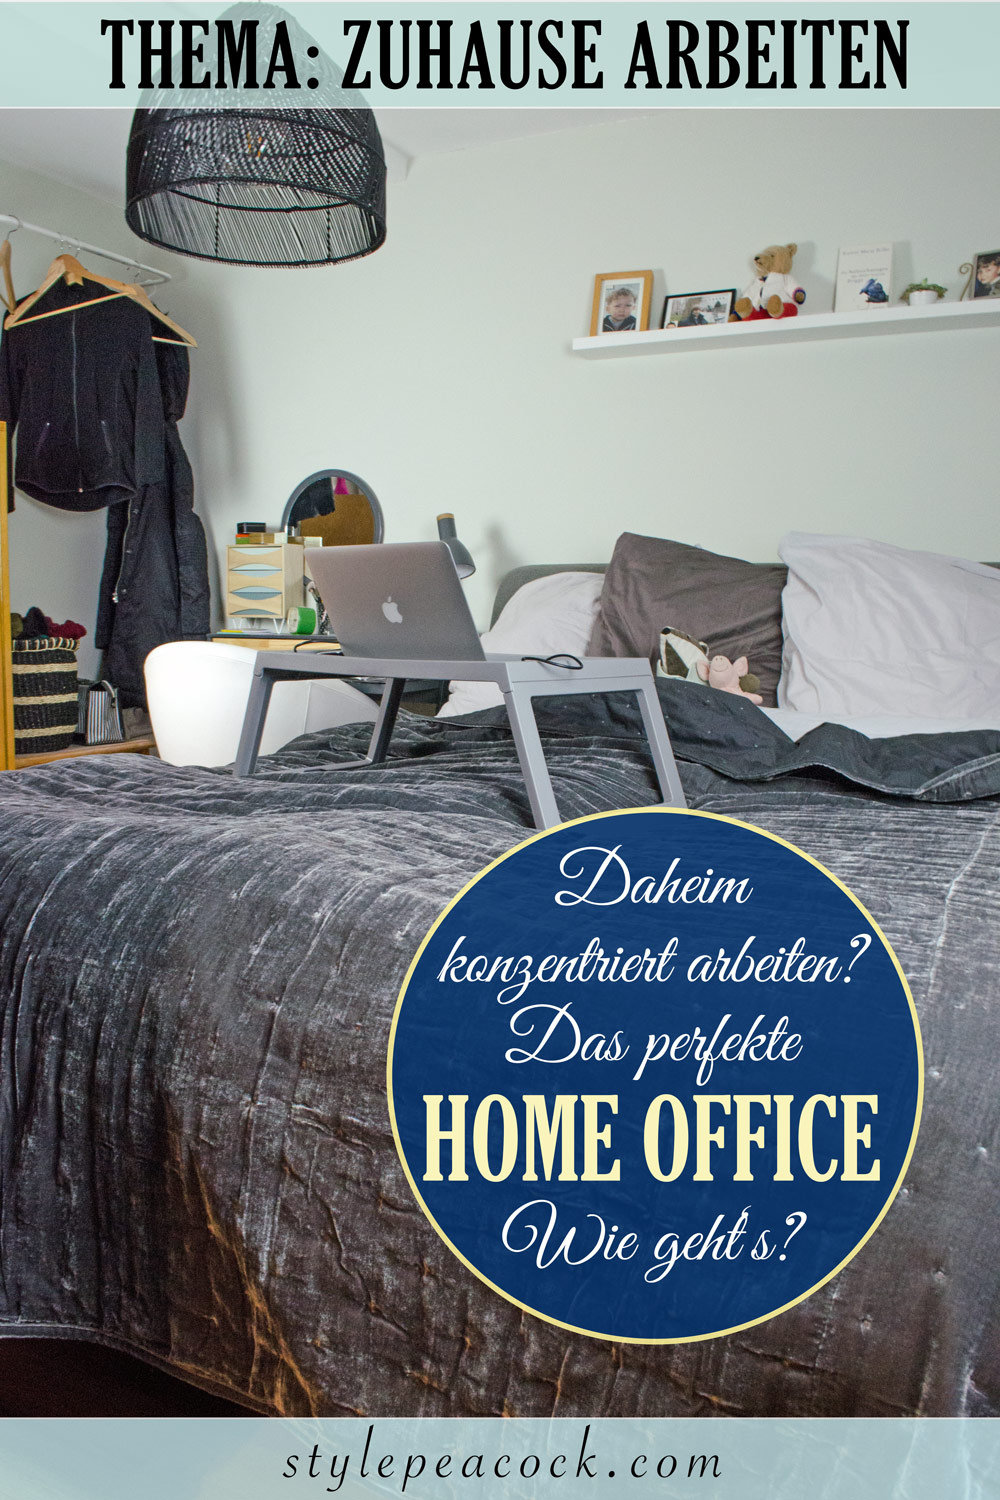 [unbezahlte werbung]Home Office | Zuhause arbeiten: Dein perfektes Büro & Arbeitsplatz daheim